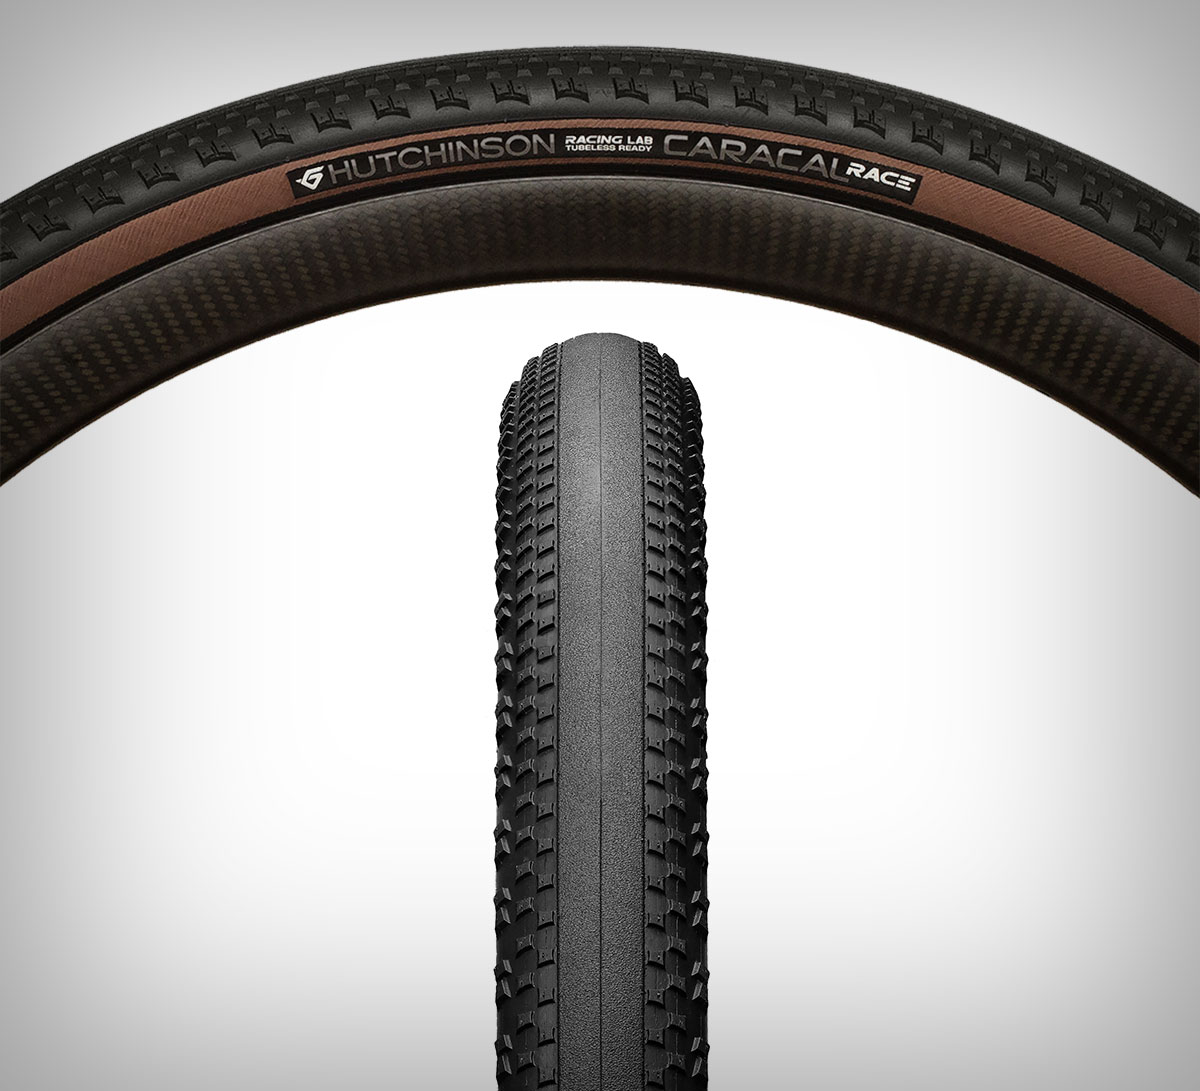 Hutchinson Caracal y Caracal Race, los dos nuevos neumáticos de la marca para competir en Gravel